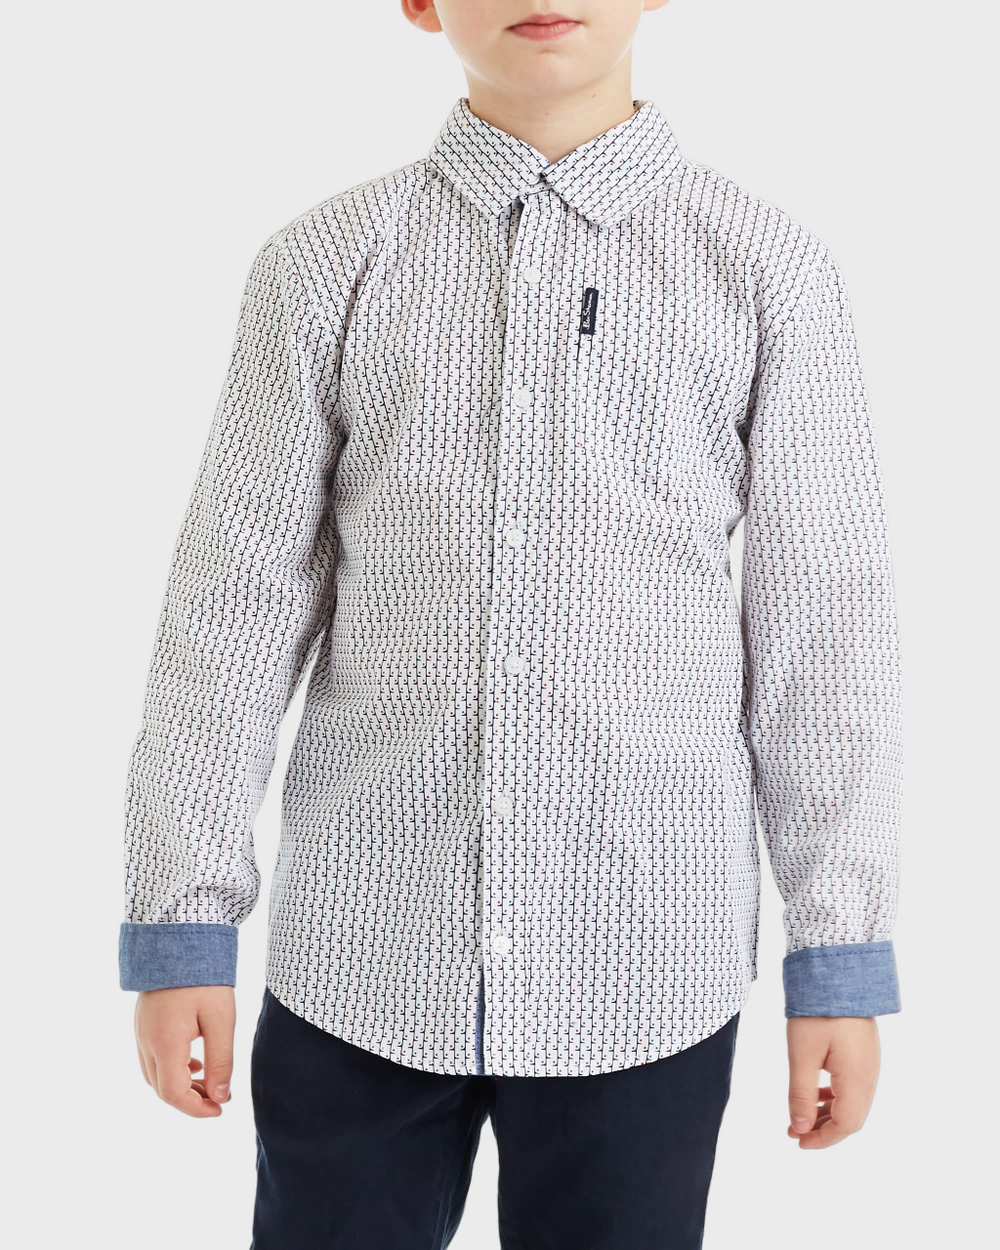 Boys Dot Print Button-Down Shirt (Sizes 4-7)